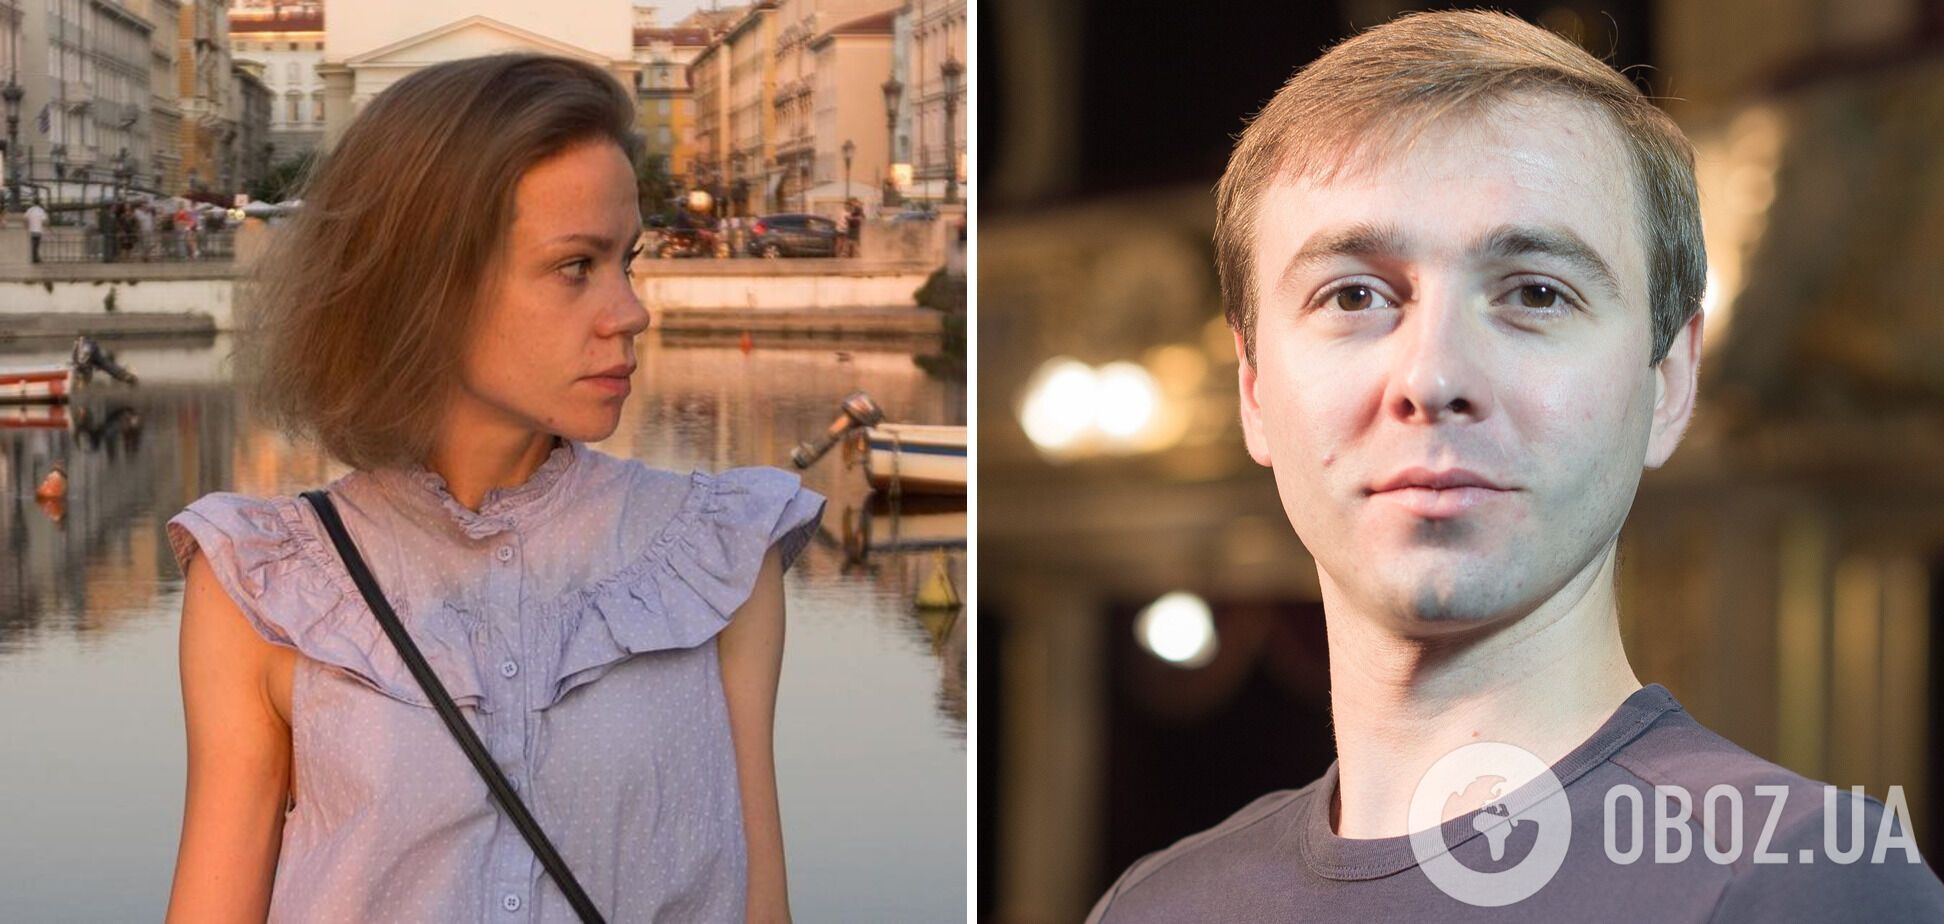 Мужчины остались, женщина вернулась в Украину: скандал с артистами Львовской оперы получил продолжение